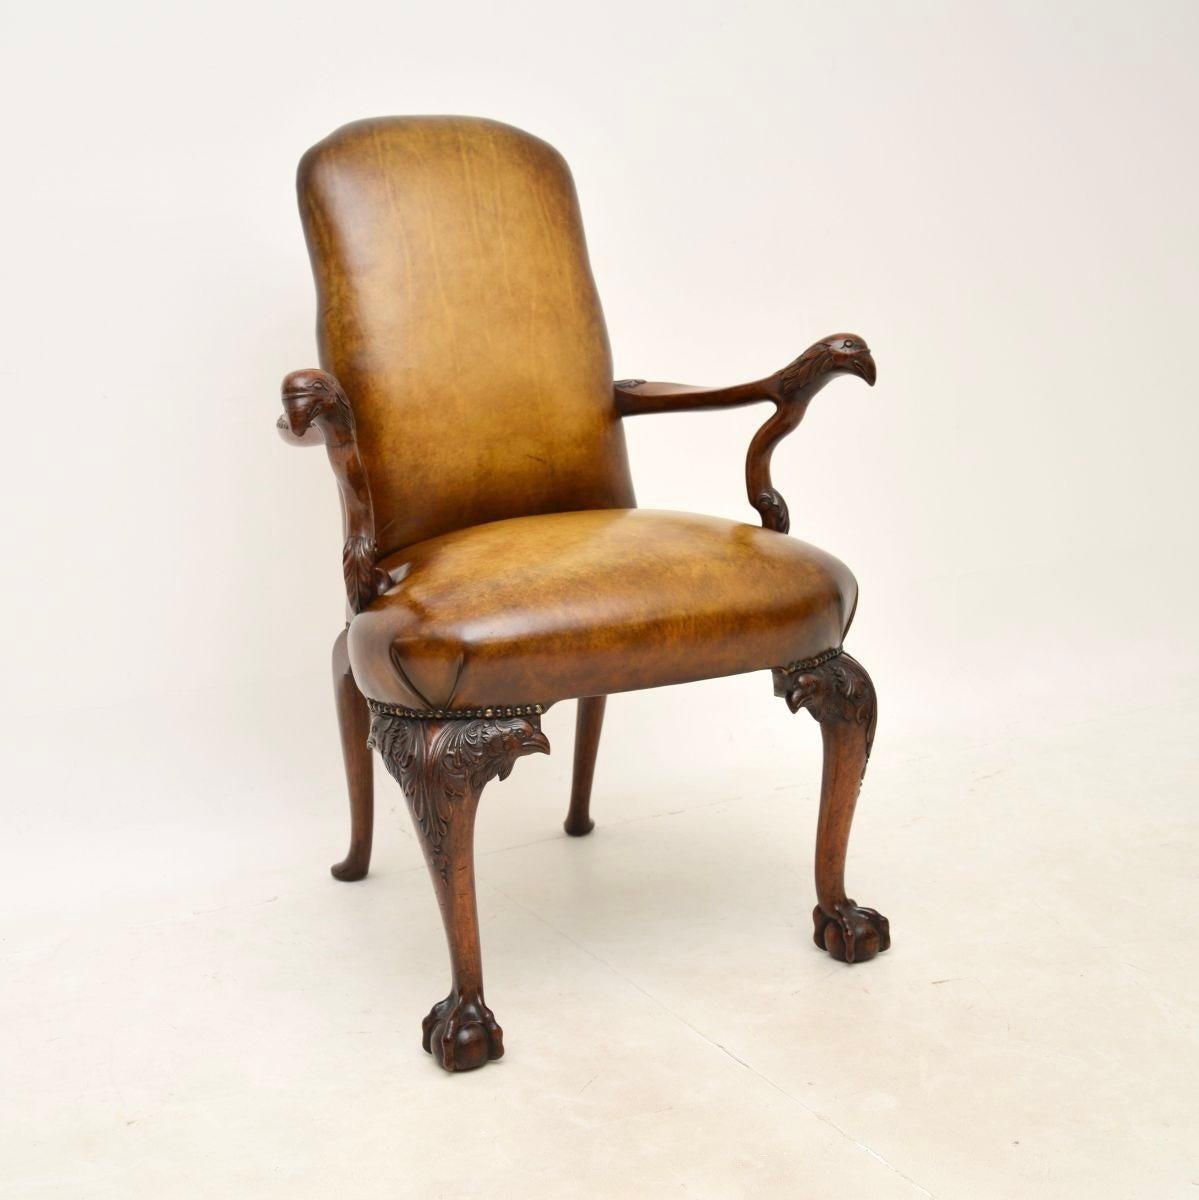 Un fauteuil en cuir et en noyer d'époque géorgienne irlandaise absolument magnifique. Fabriqué en Irlande, il date de la période 1750-1780.

Il s'agit du plus bel exemple que l'on puisse espérer voir, largement copié et rarement vu dans sa forme